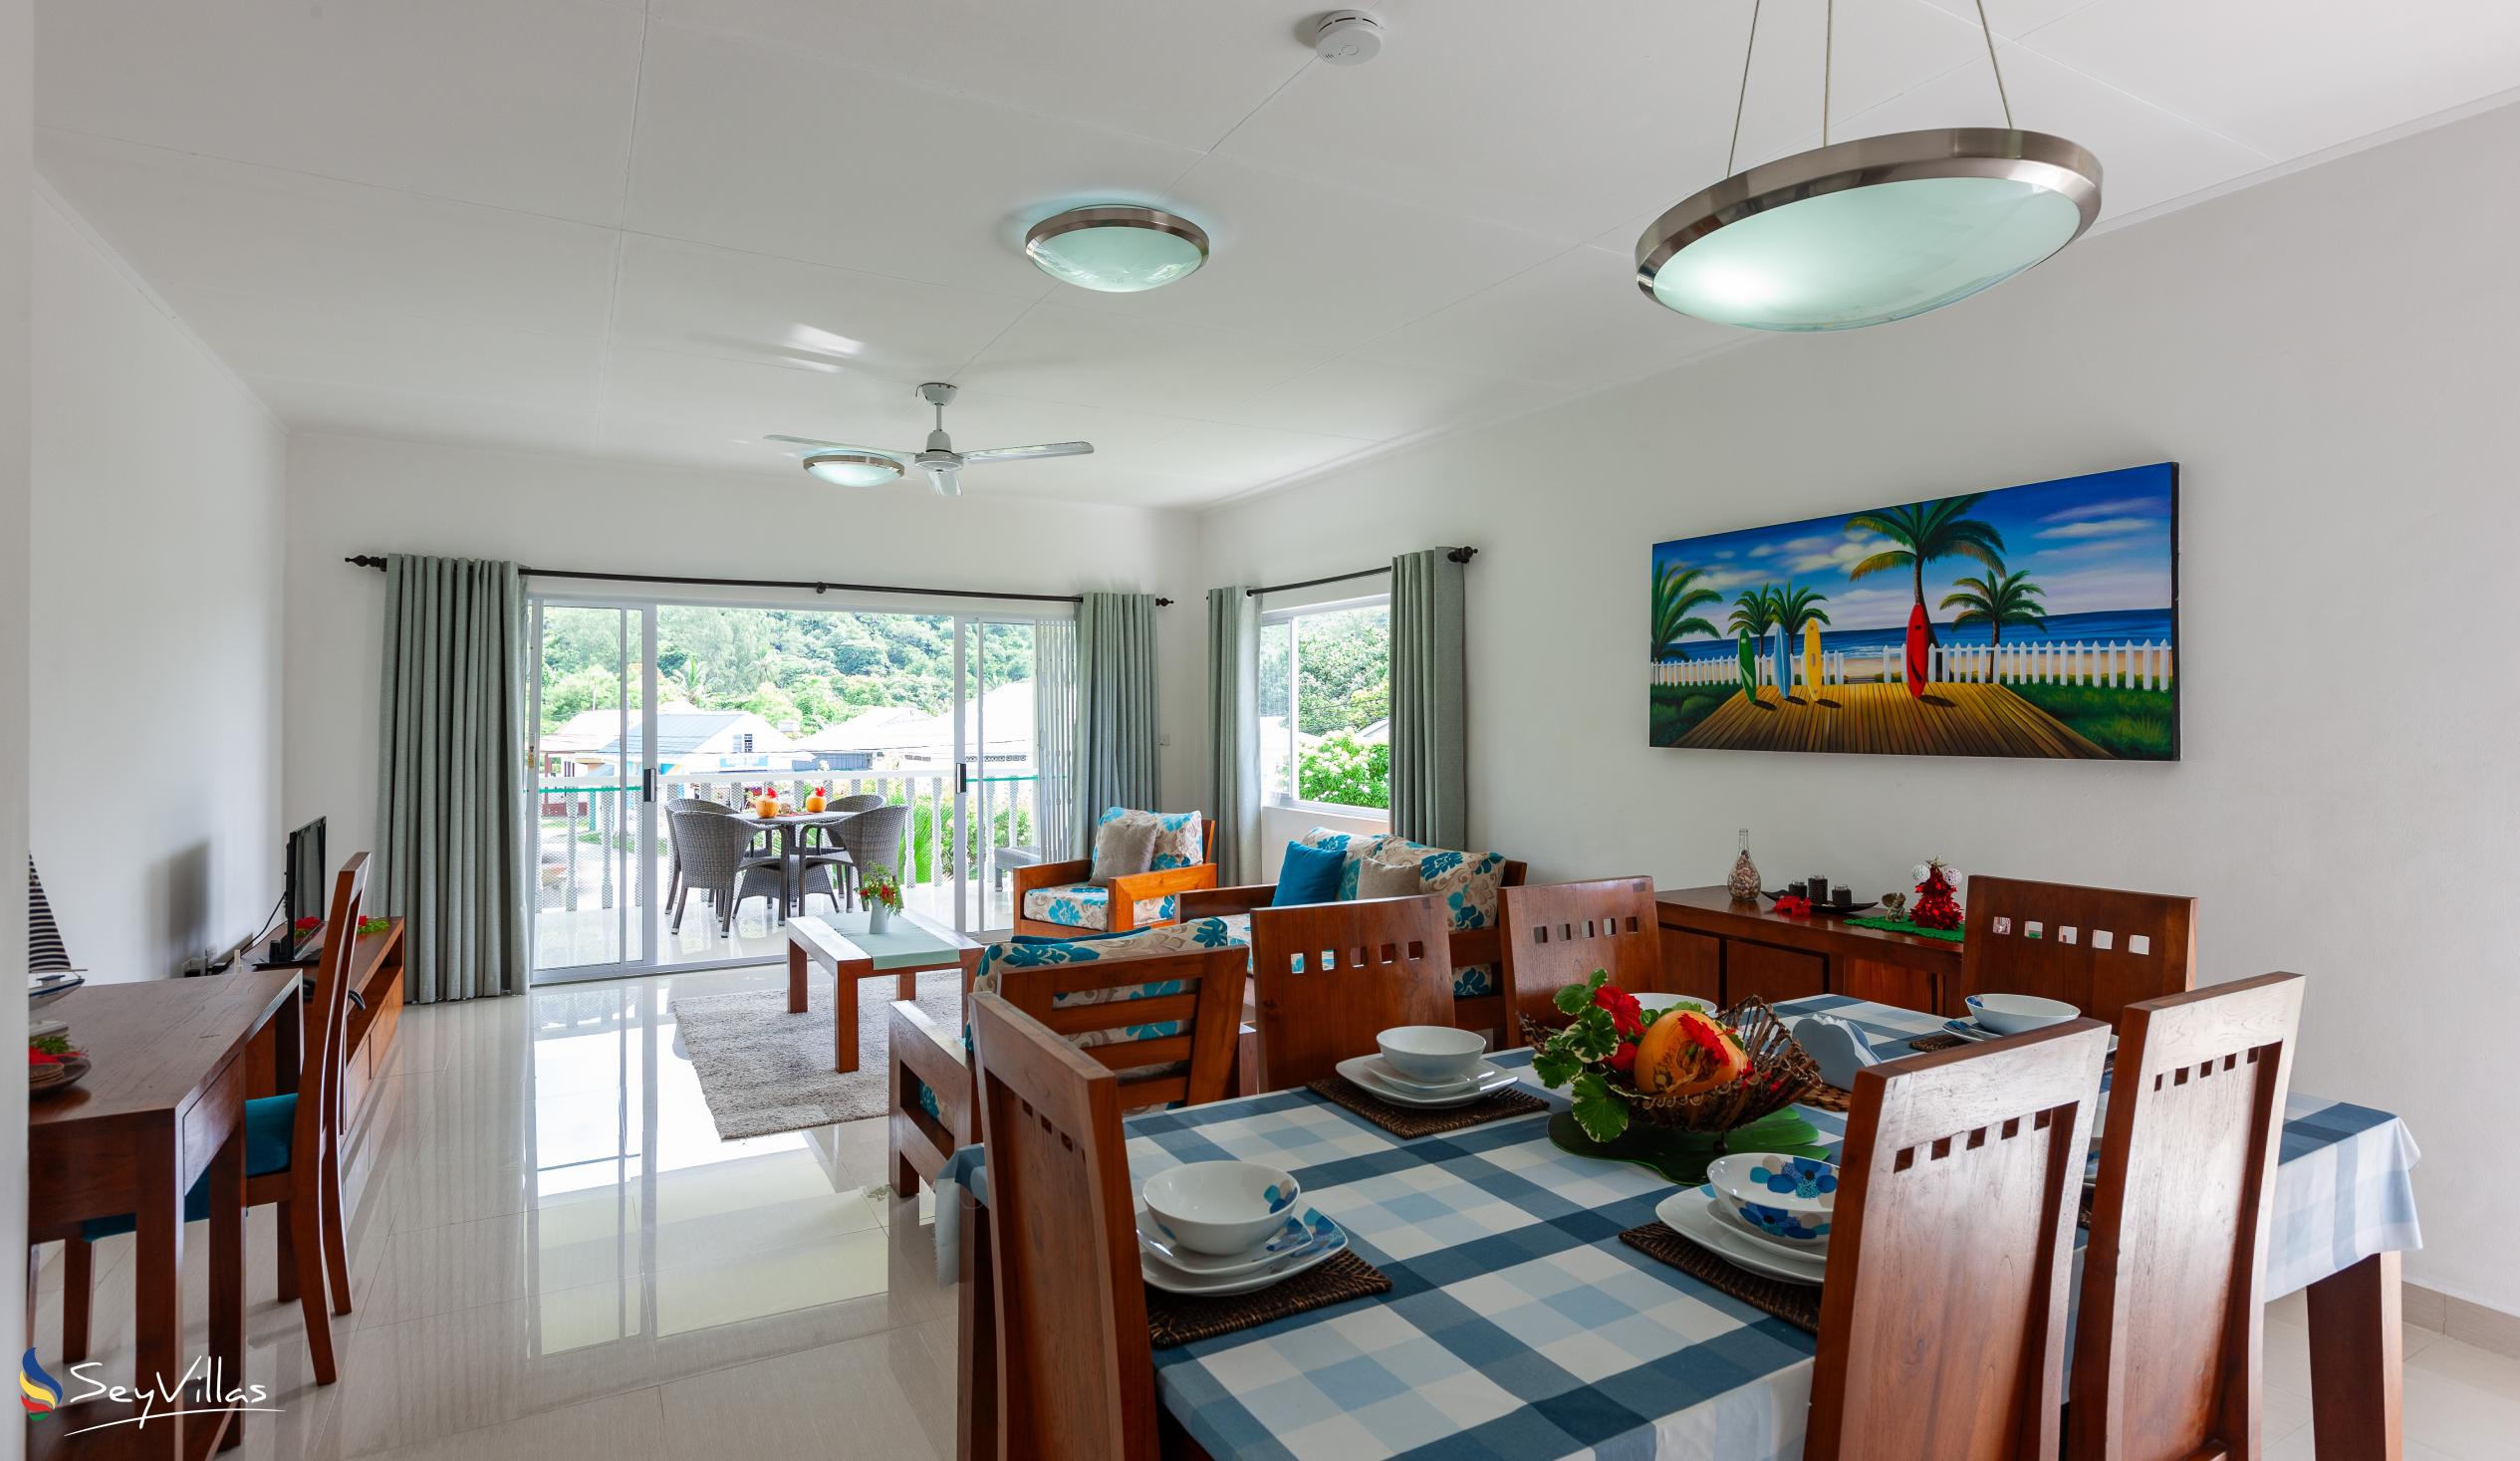 Photo 21: Casa Tara Villas - 2-Bedroom Apartment - Praslin (Seychelles)